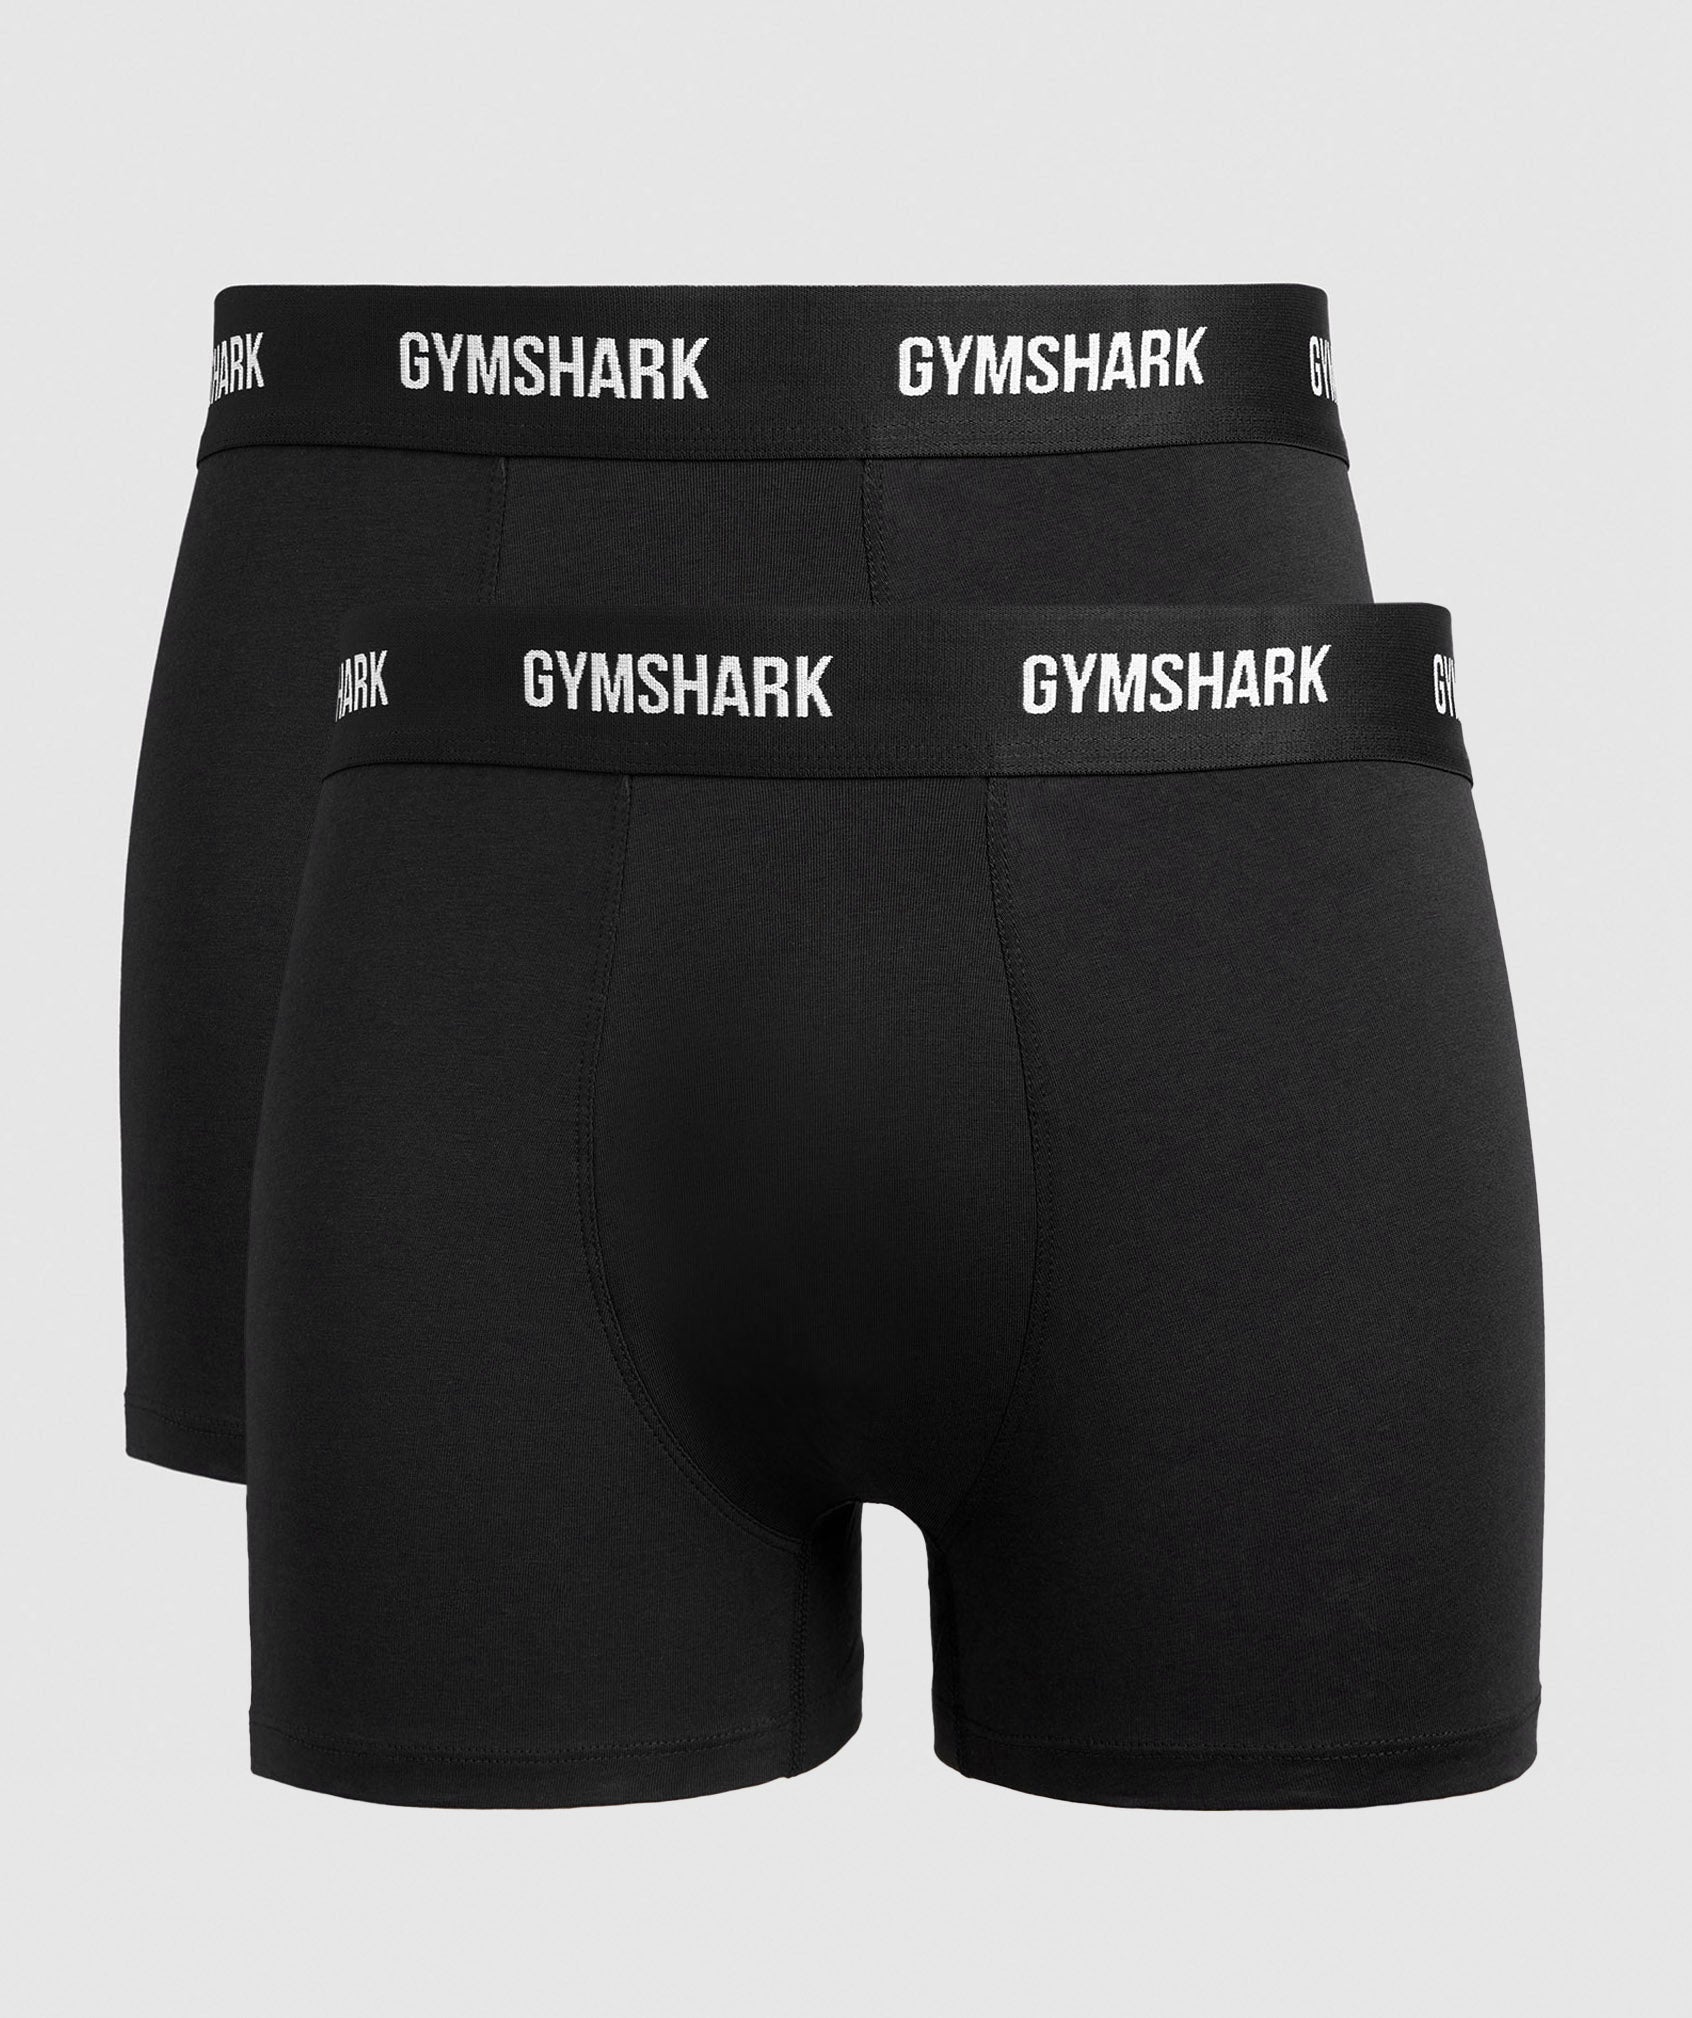 GymShark briefs  Rapazes sensuais, Cueca de homem, Garotos sensuais